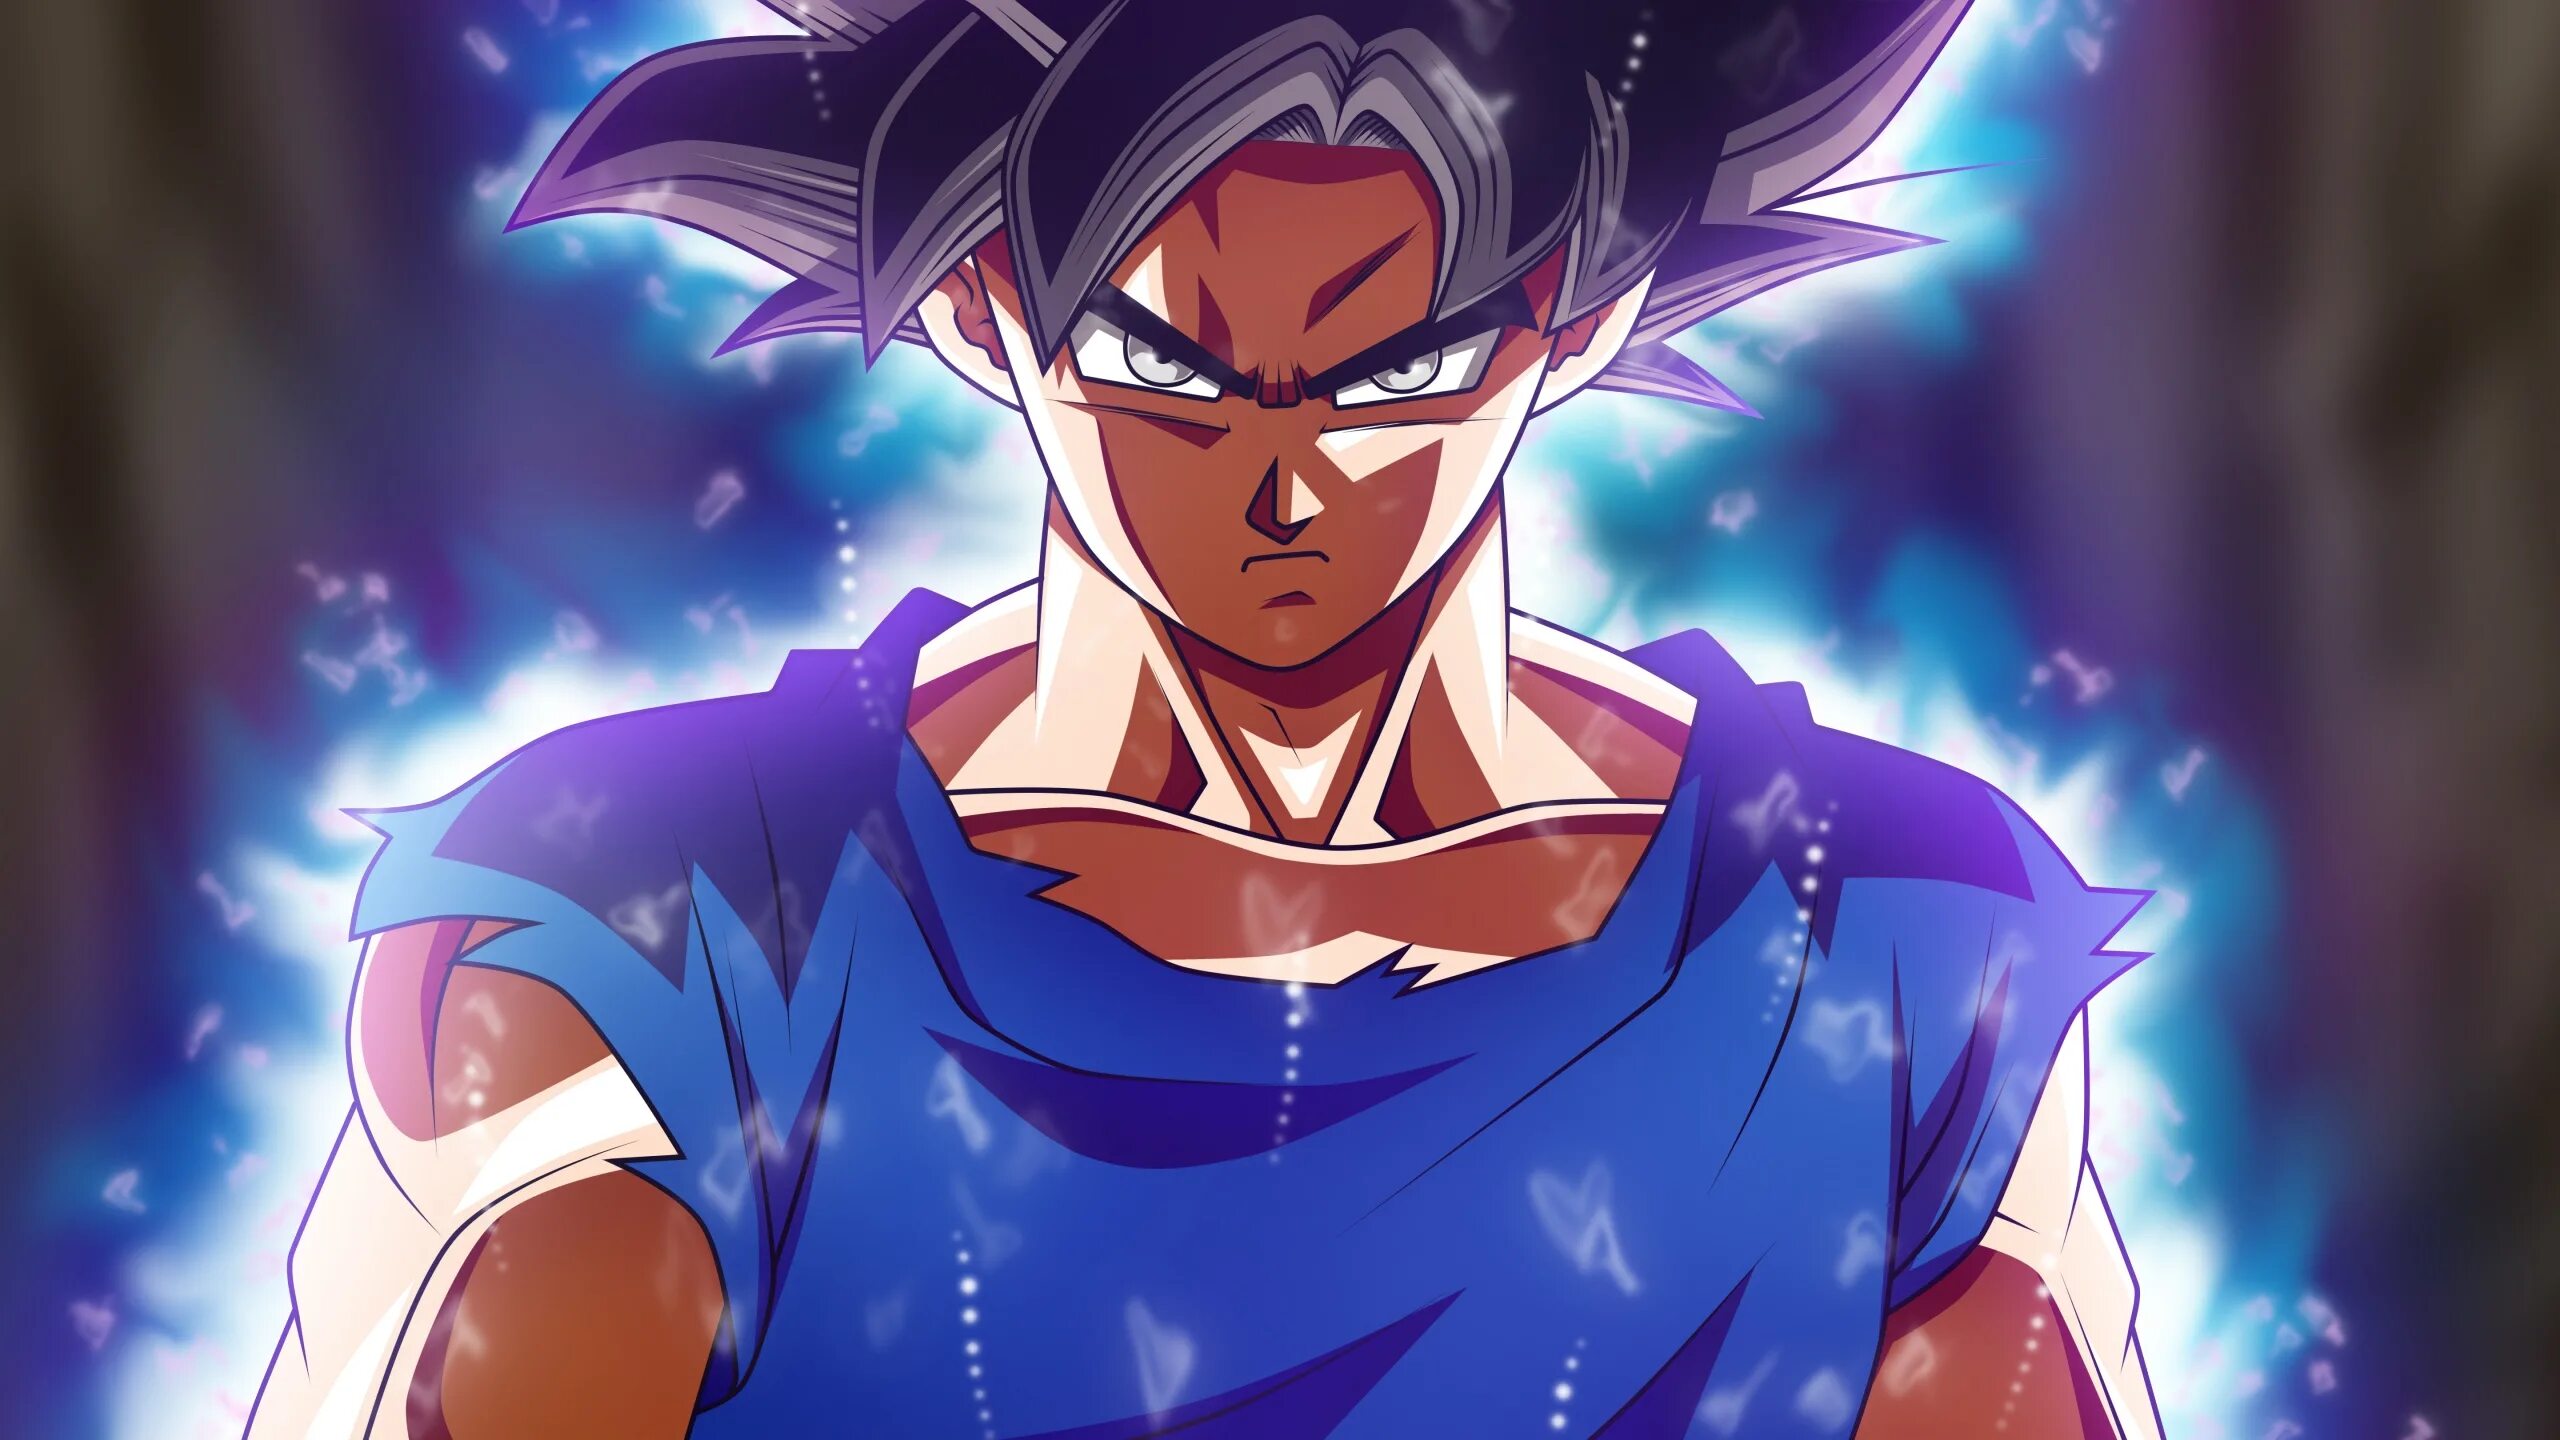 Goku ultra instinct. Драгон бол ультра инстинкт. Гоку ультра инстинкт. Son Goku Ultra Instinct. Супер инстинкт драгон бол.